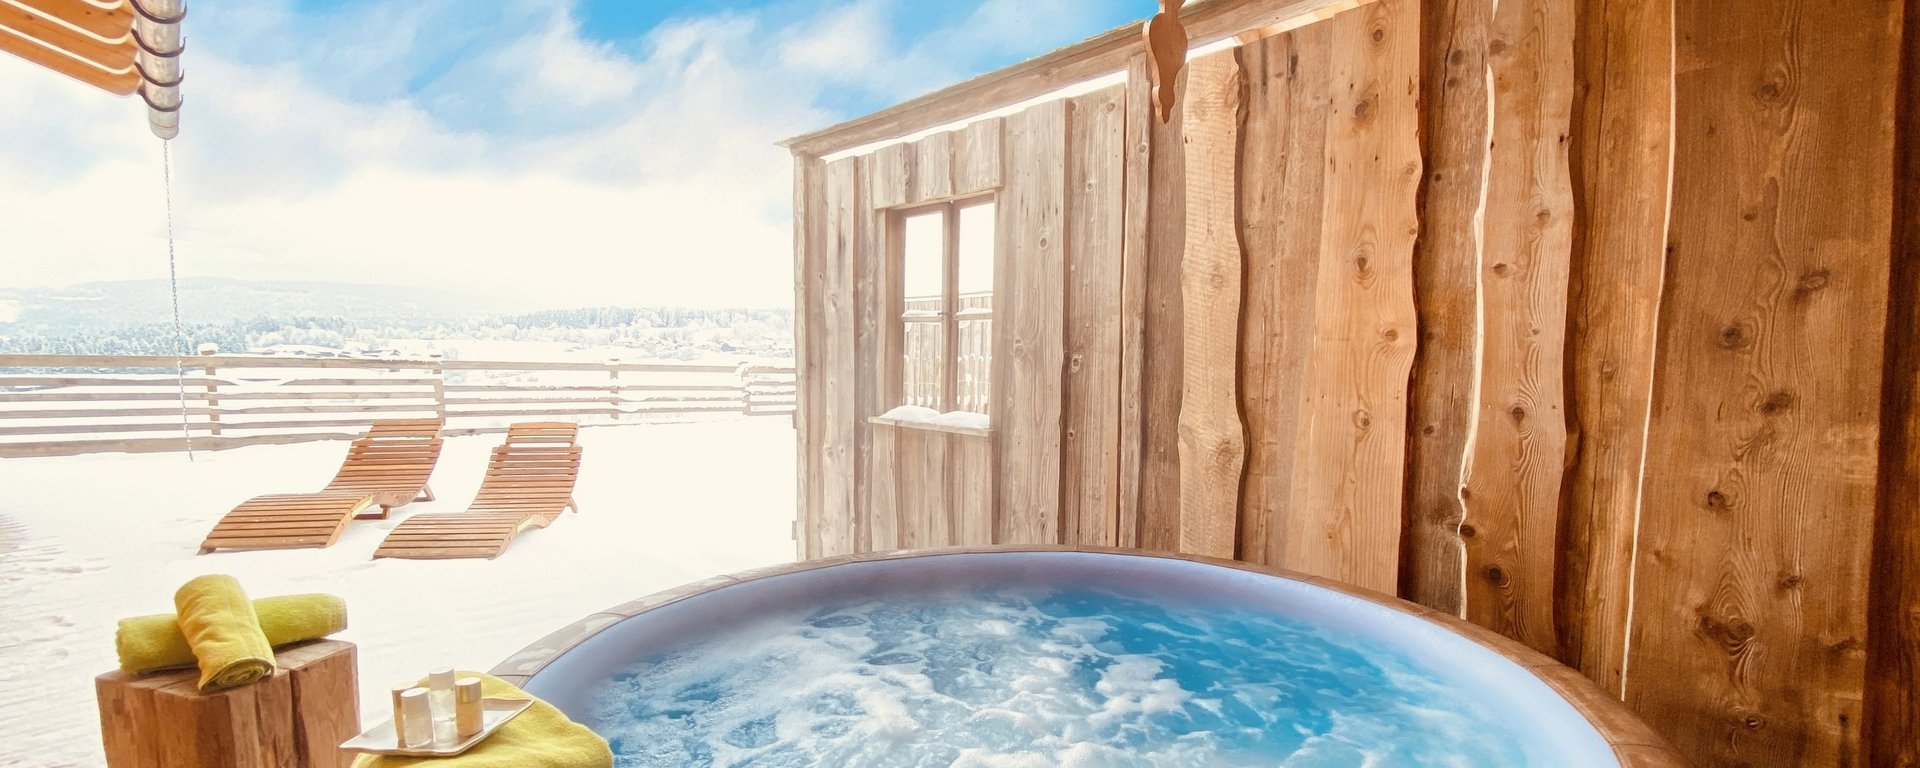 Wellness im Hot Tub im Winter in der eigenen Ferienwohnung